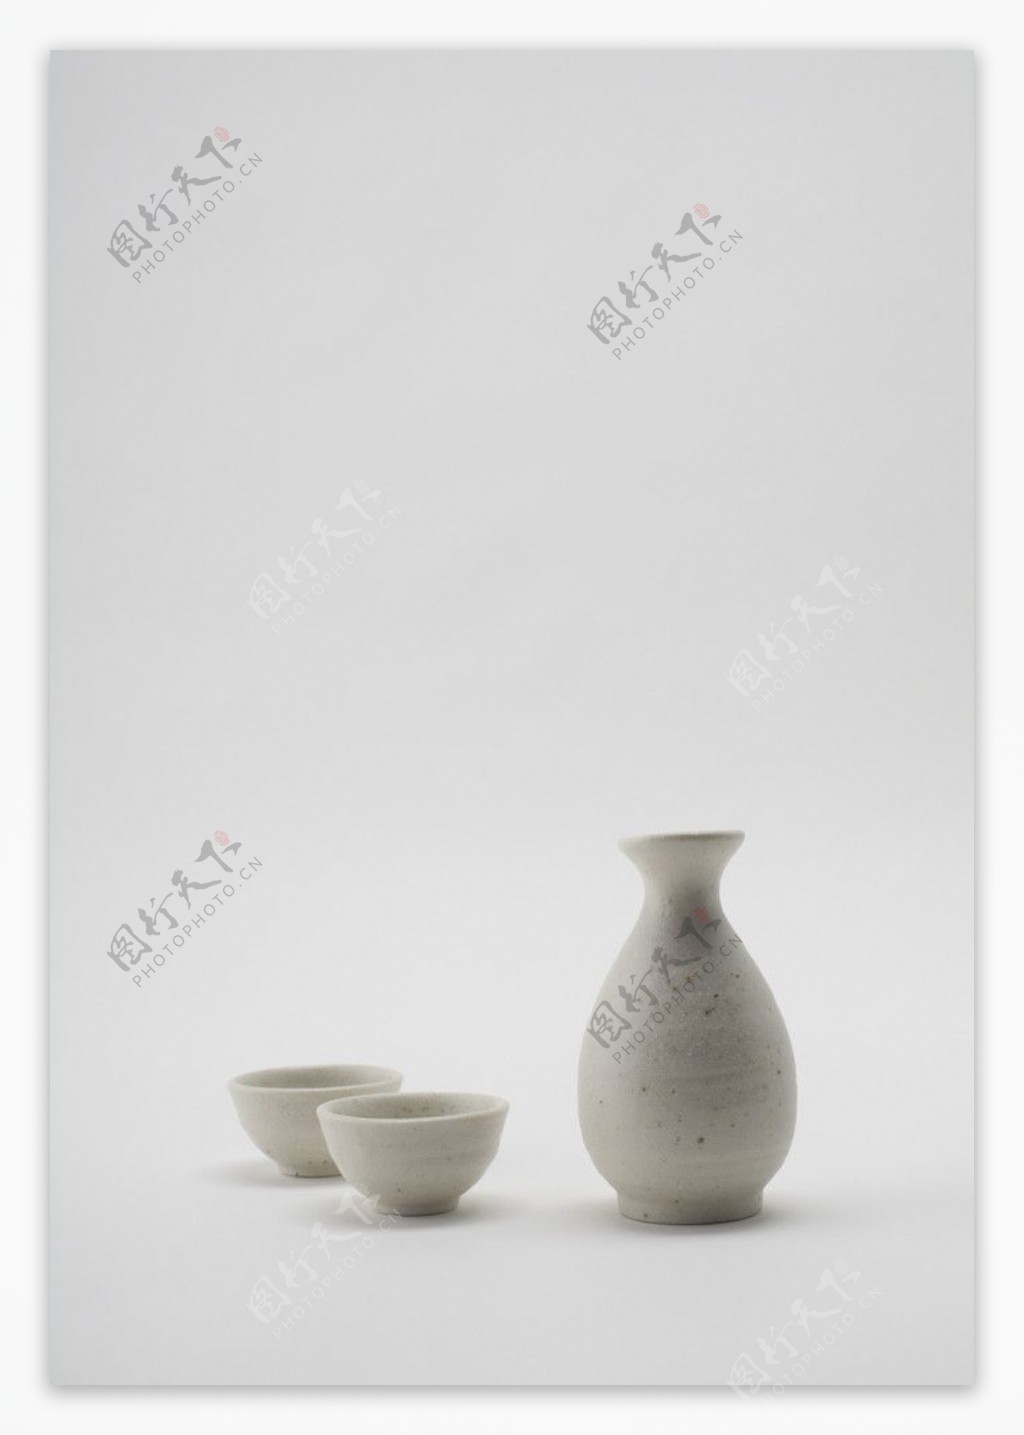 白色瓷瓶和瓷杯图片